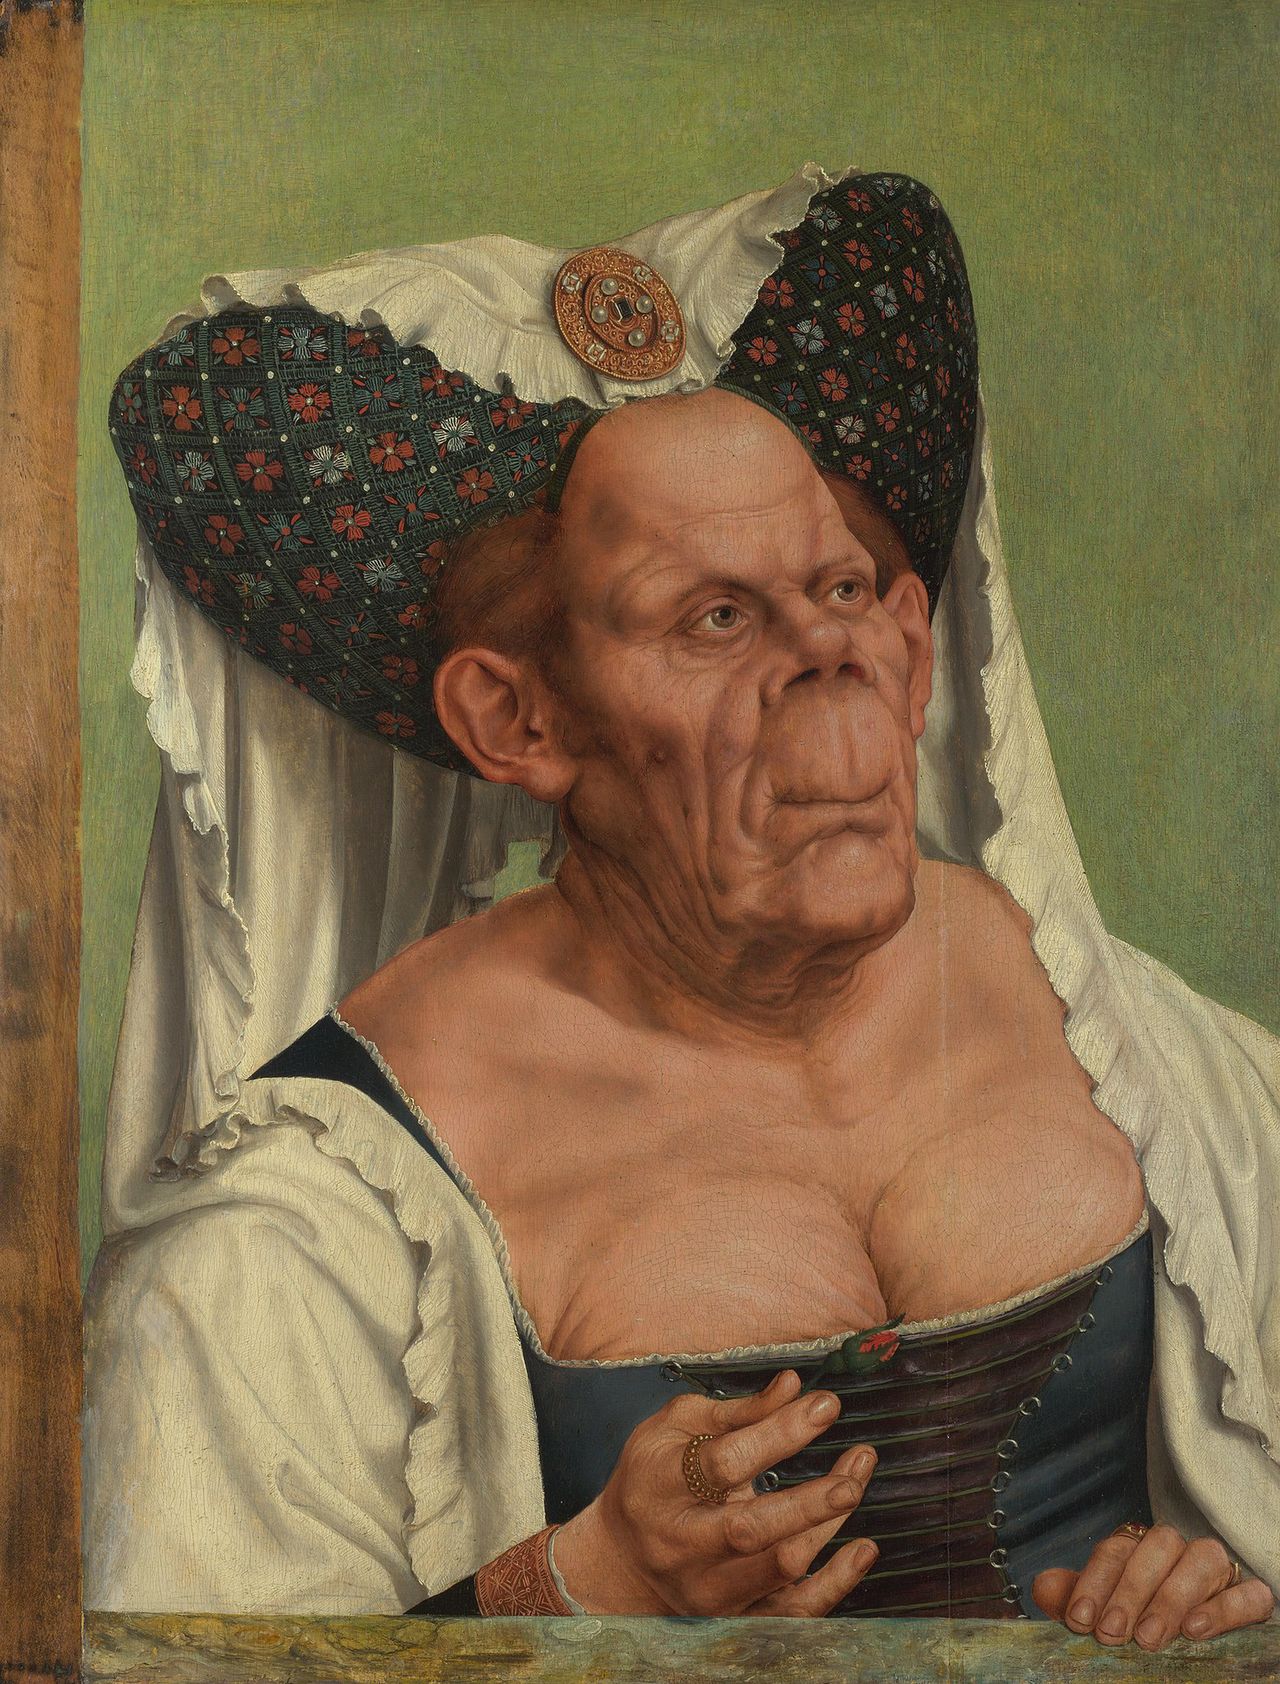 Obraz Quentina Matsysa znany jako Szpetna księżna lub Stara kobieta z około 1513 roku